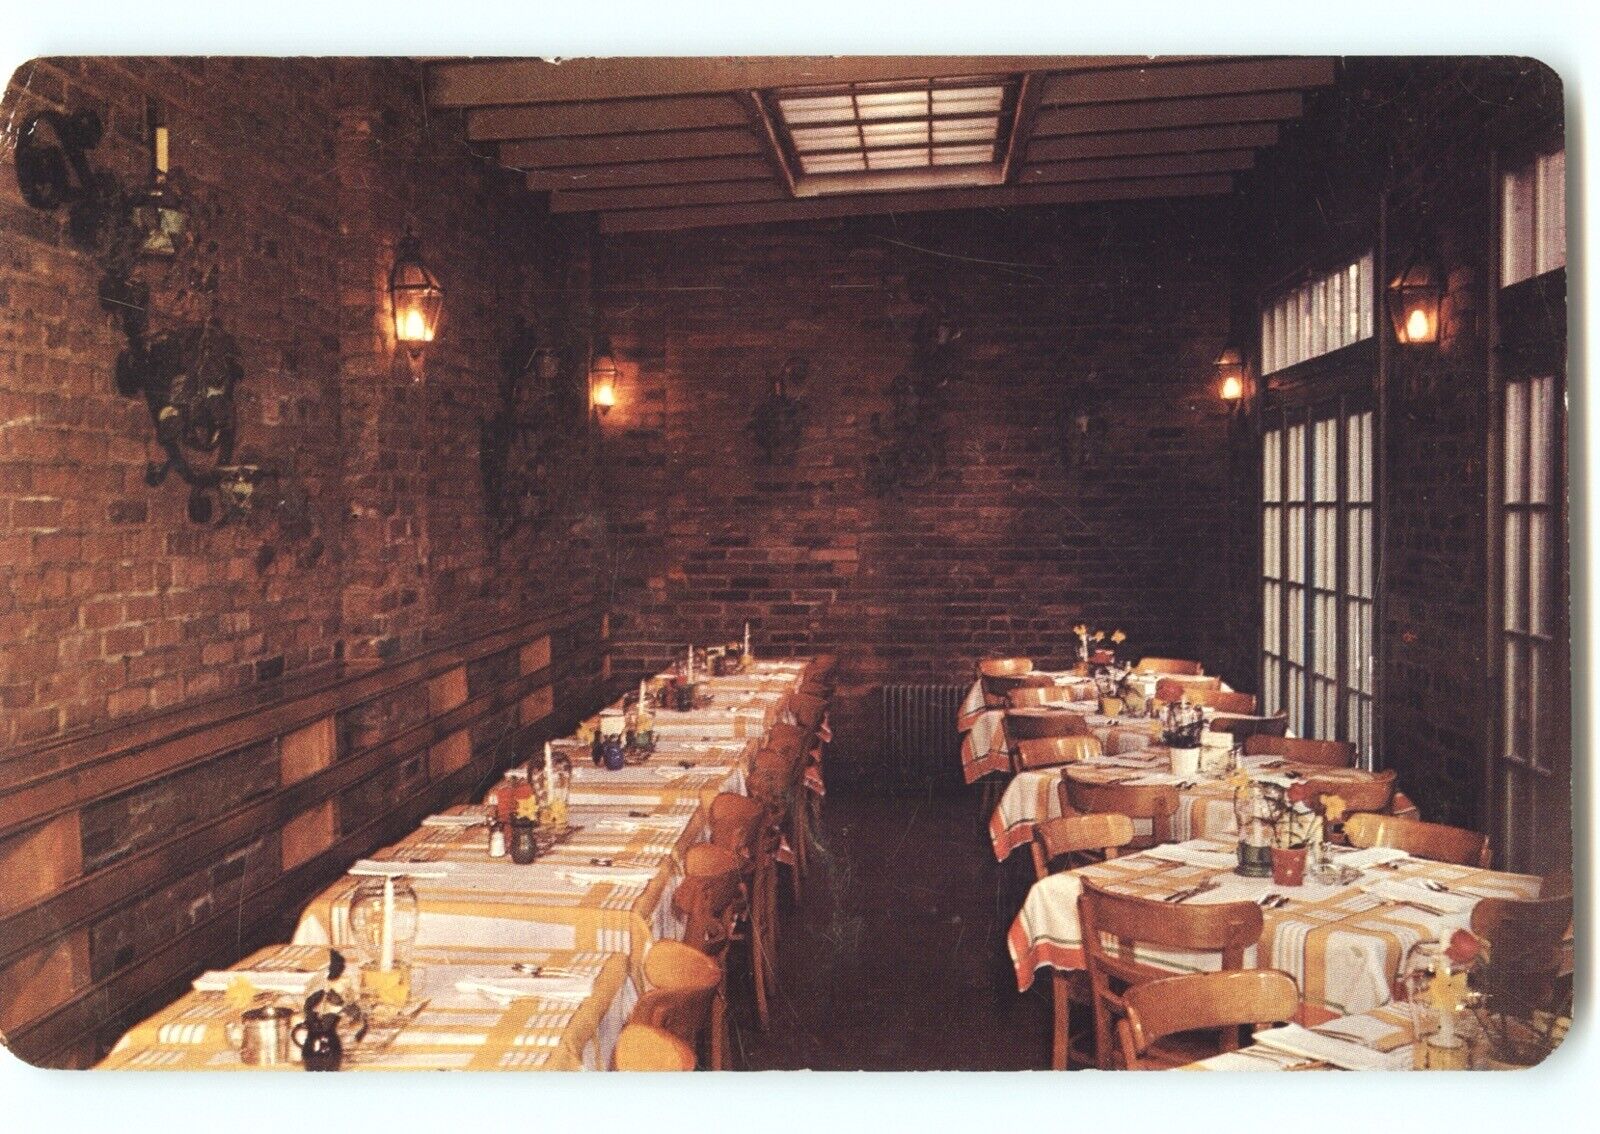 Postcard: Tally Ho Restaurant Dining Room (The Orangerie) - Washington, D.C.